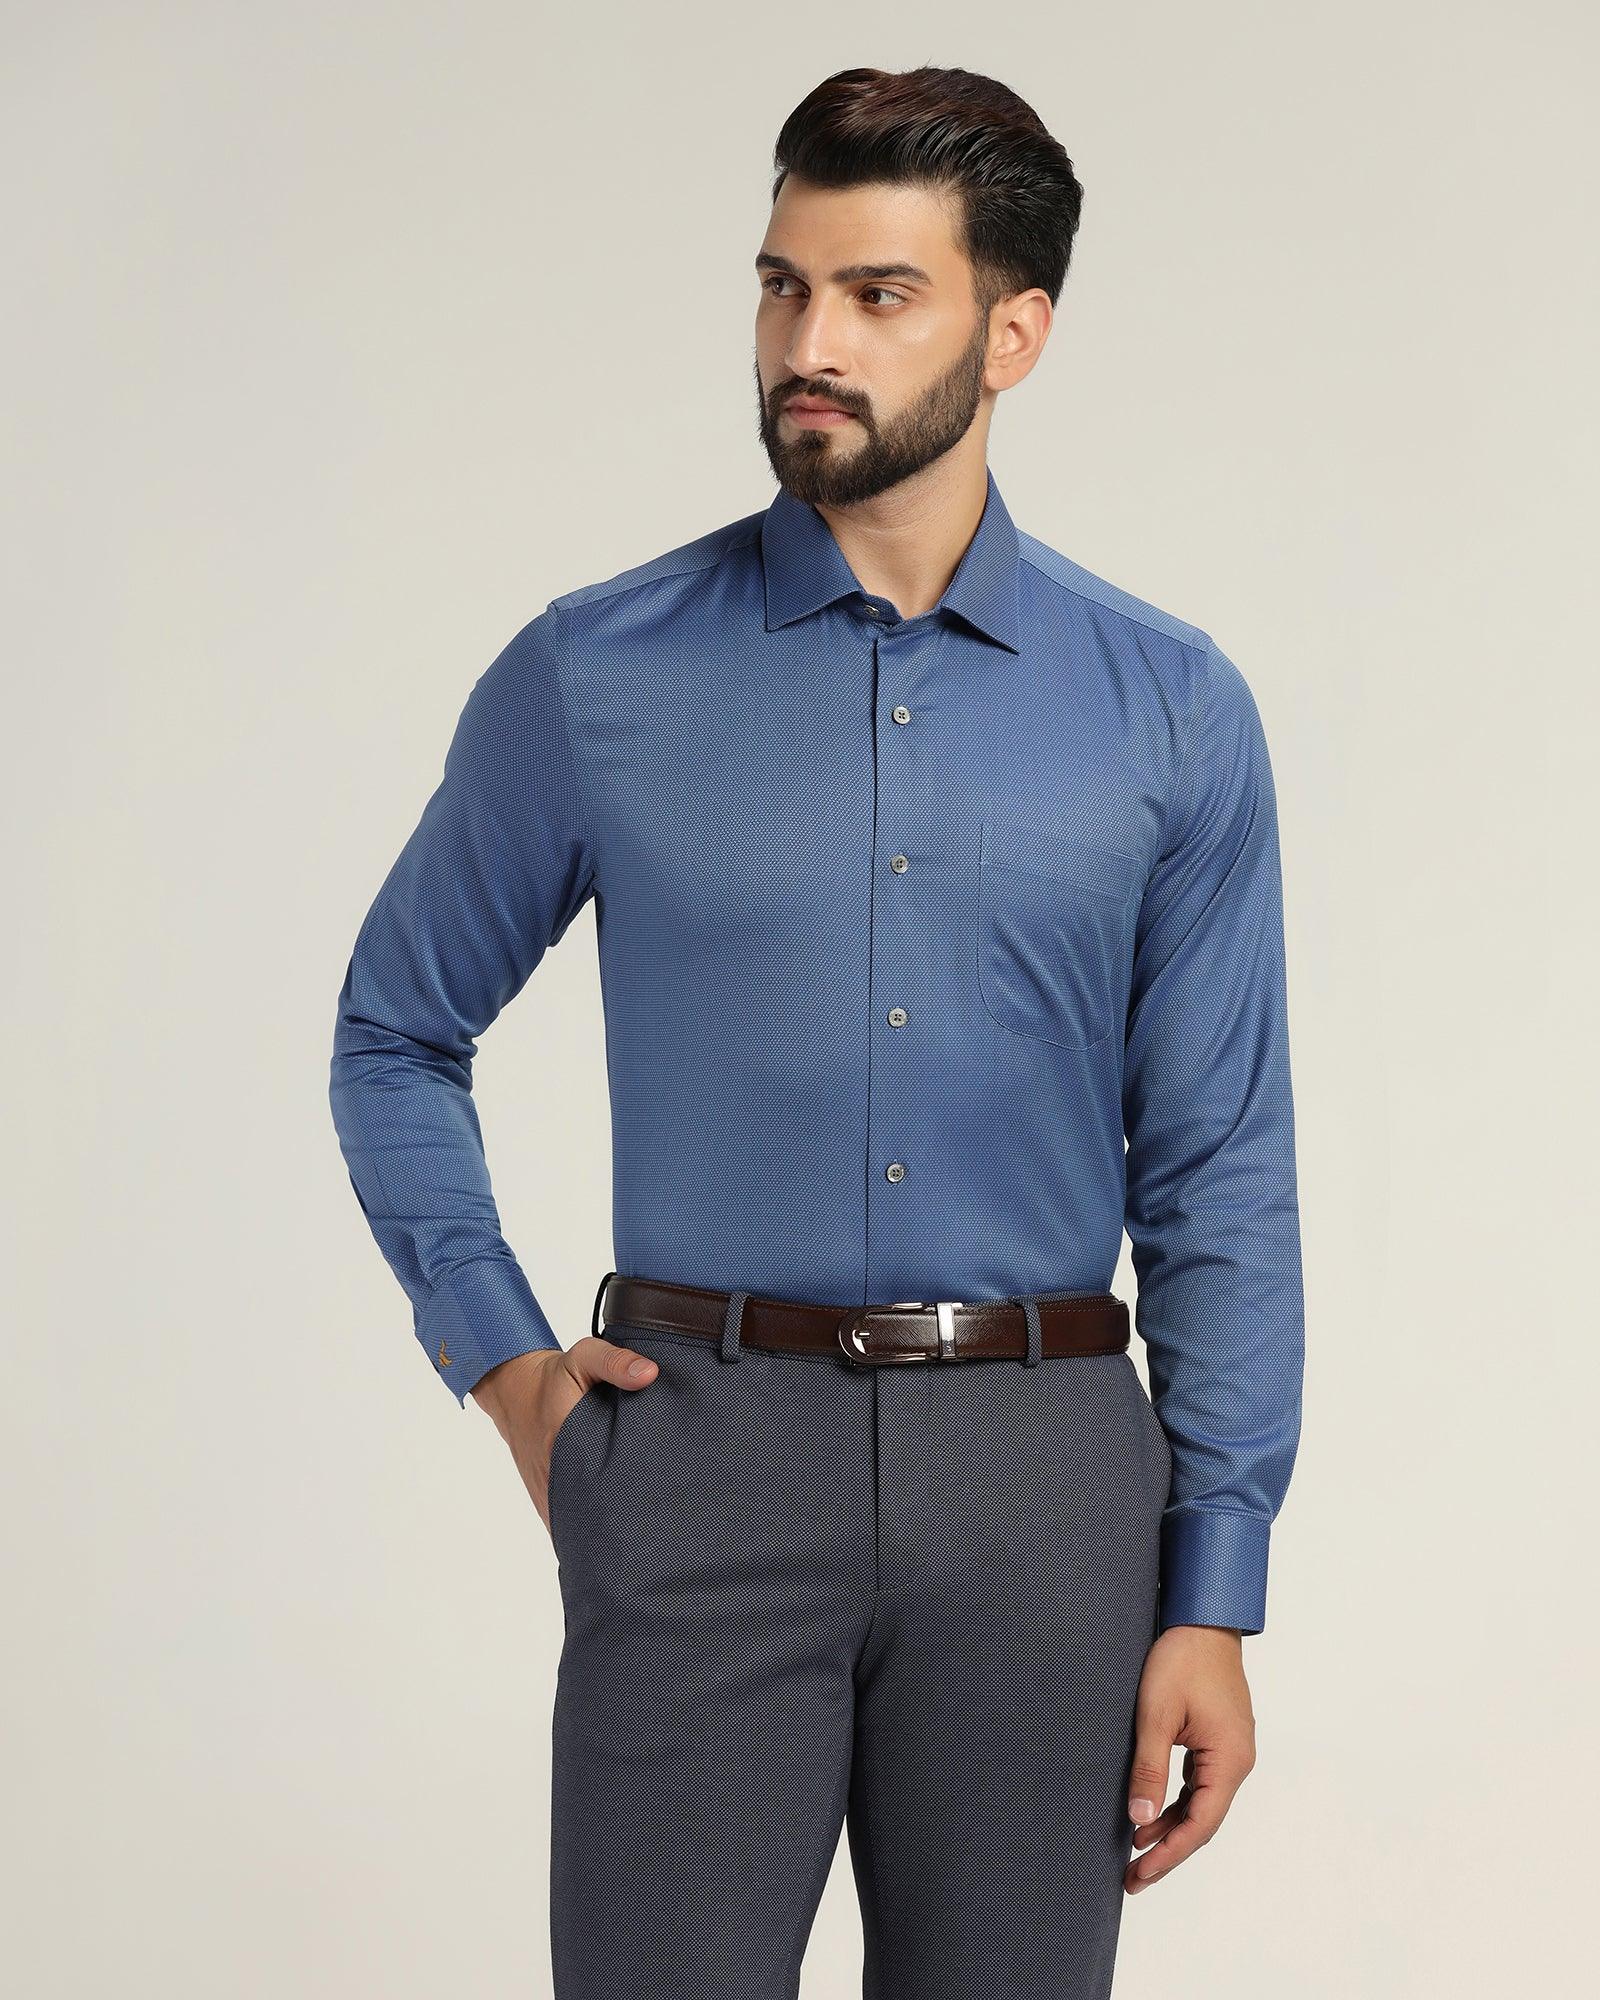 Luxe Formal Blue Textured Shirt - Fixer